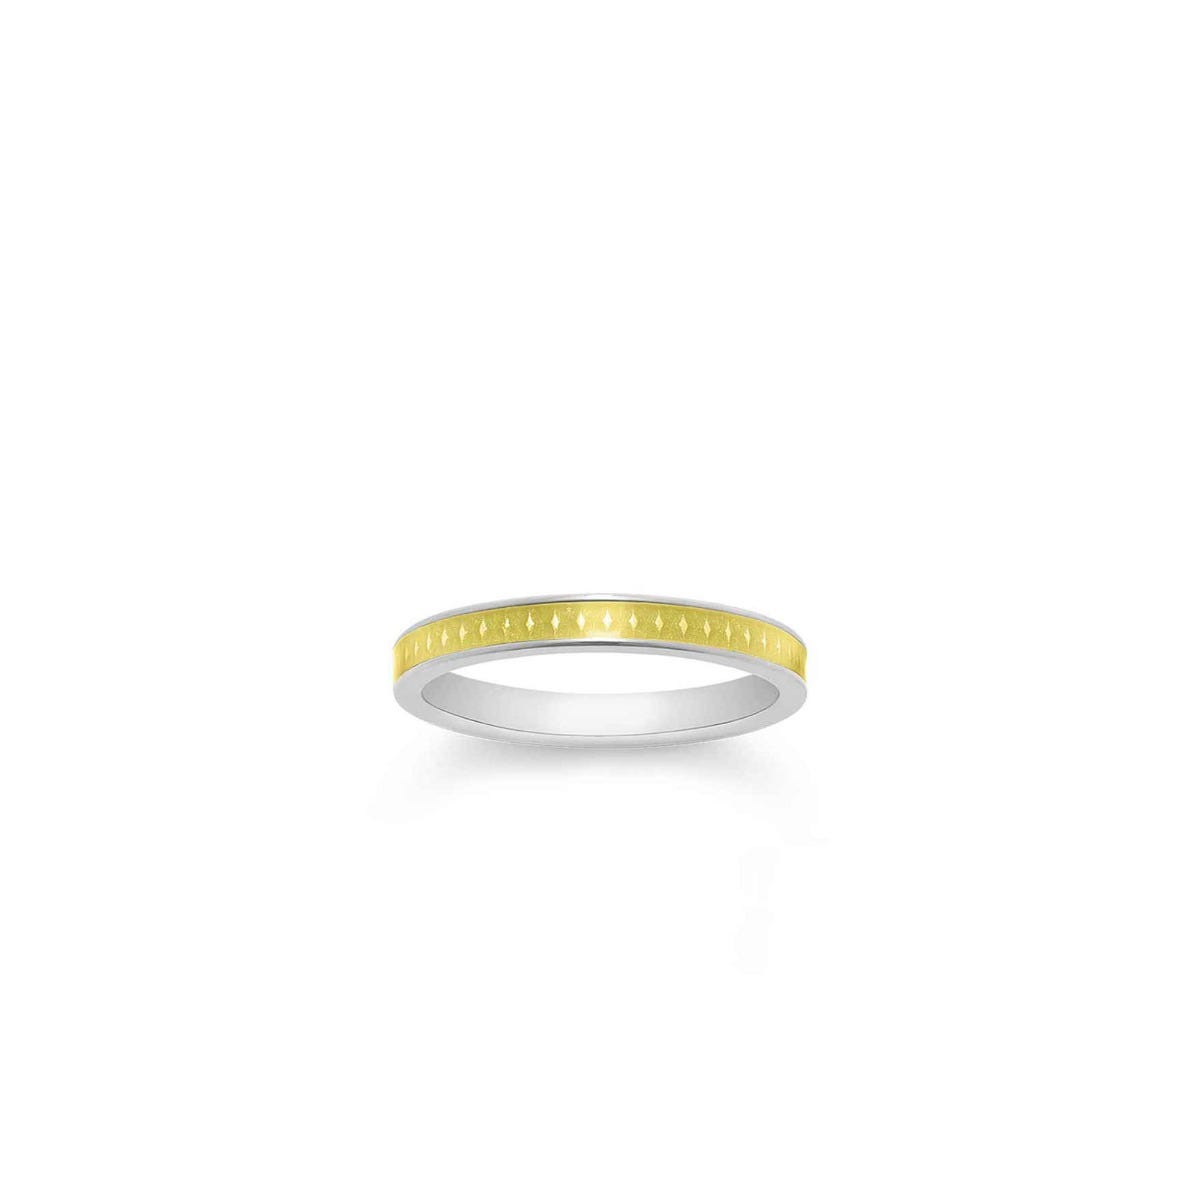 167 Enamel Ring in 18ct White Gold